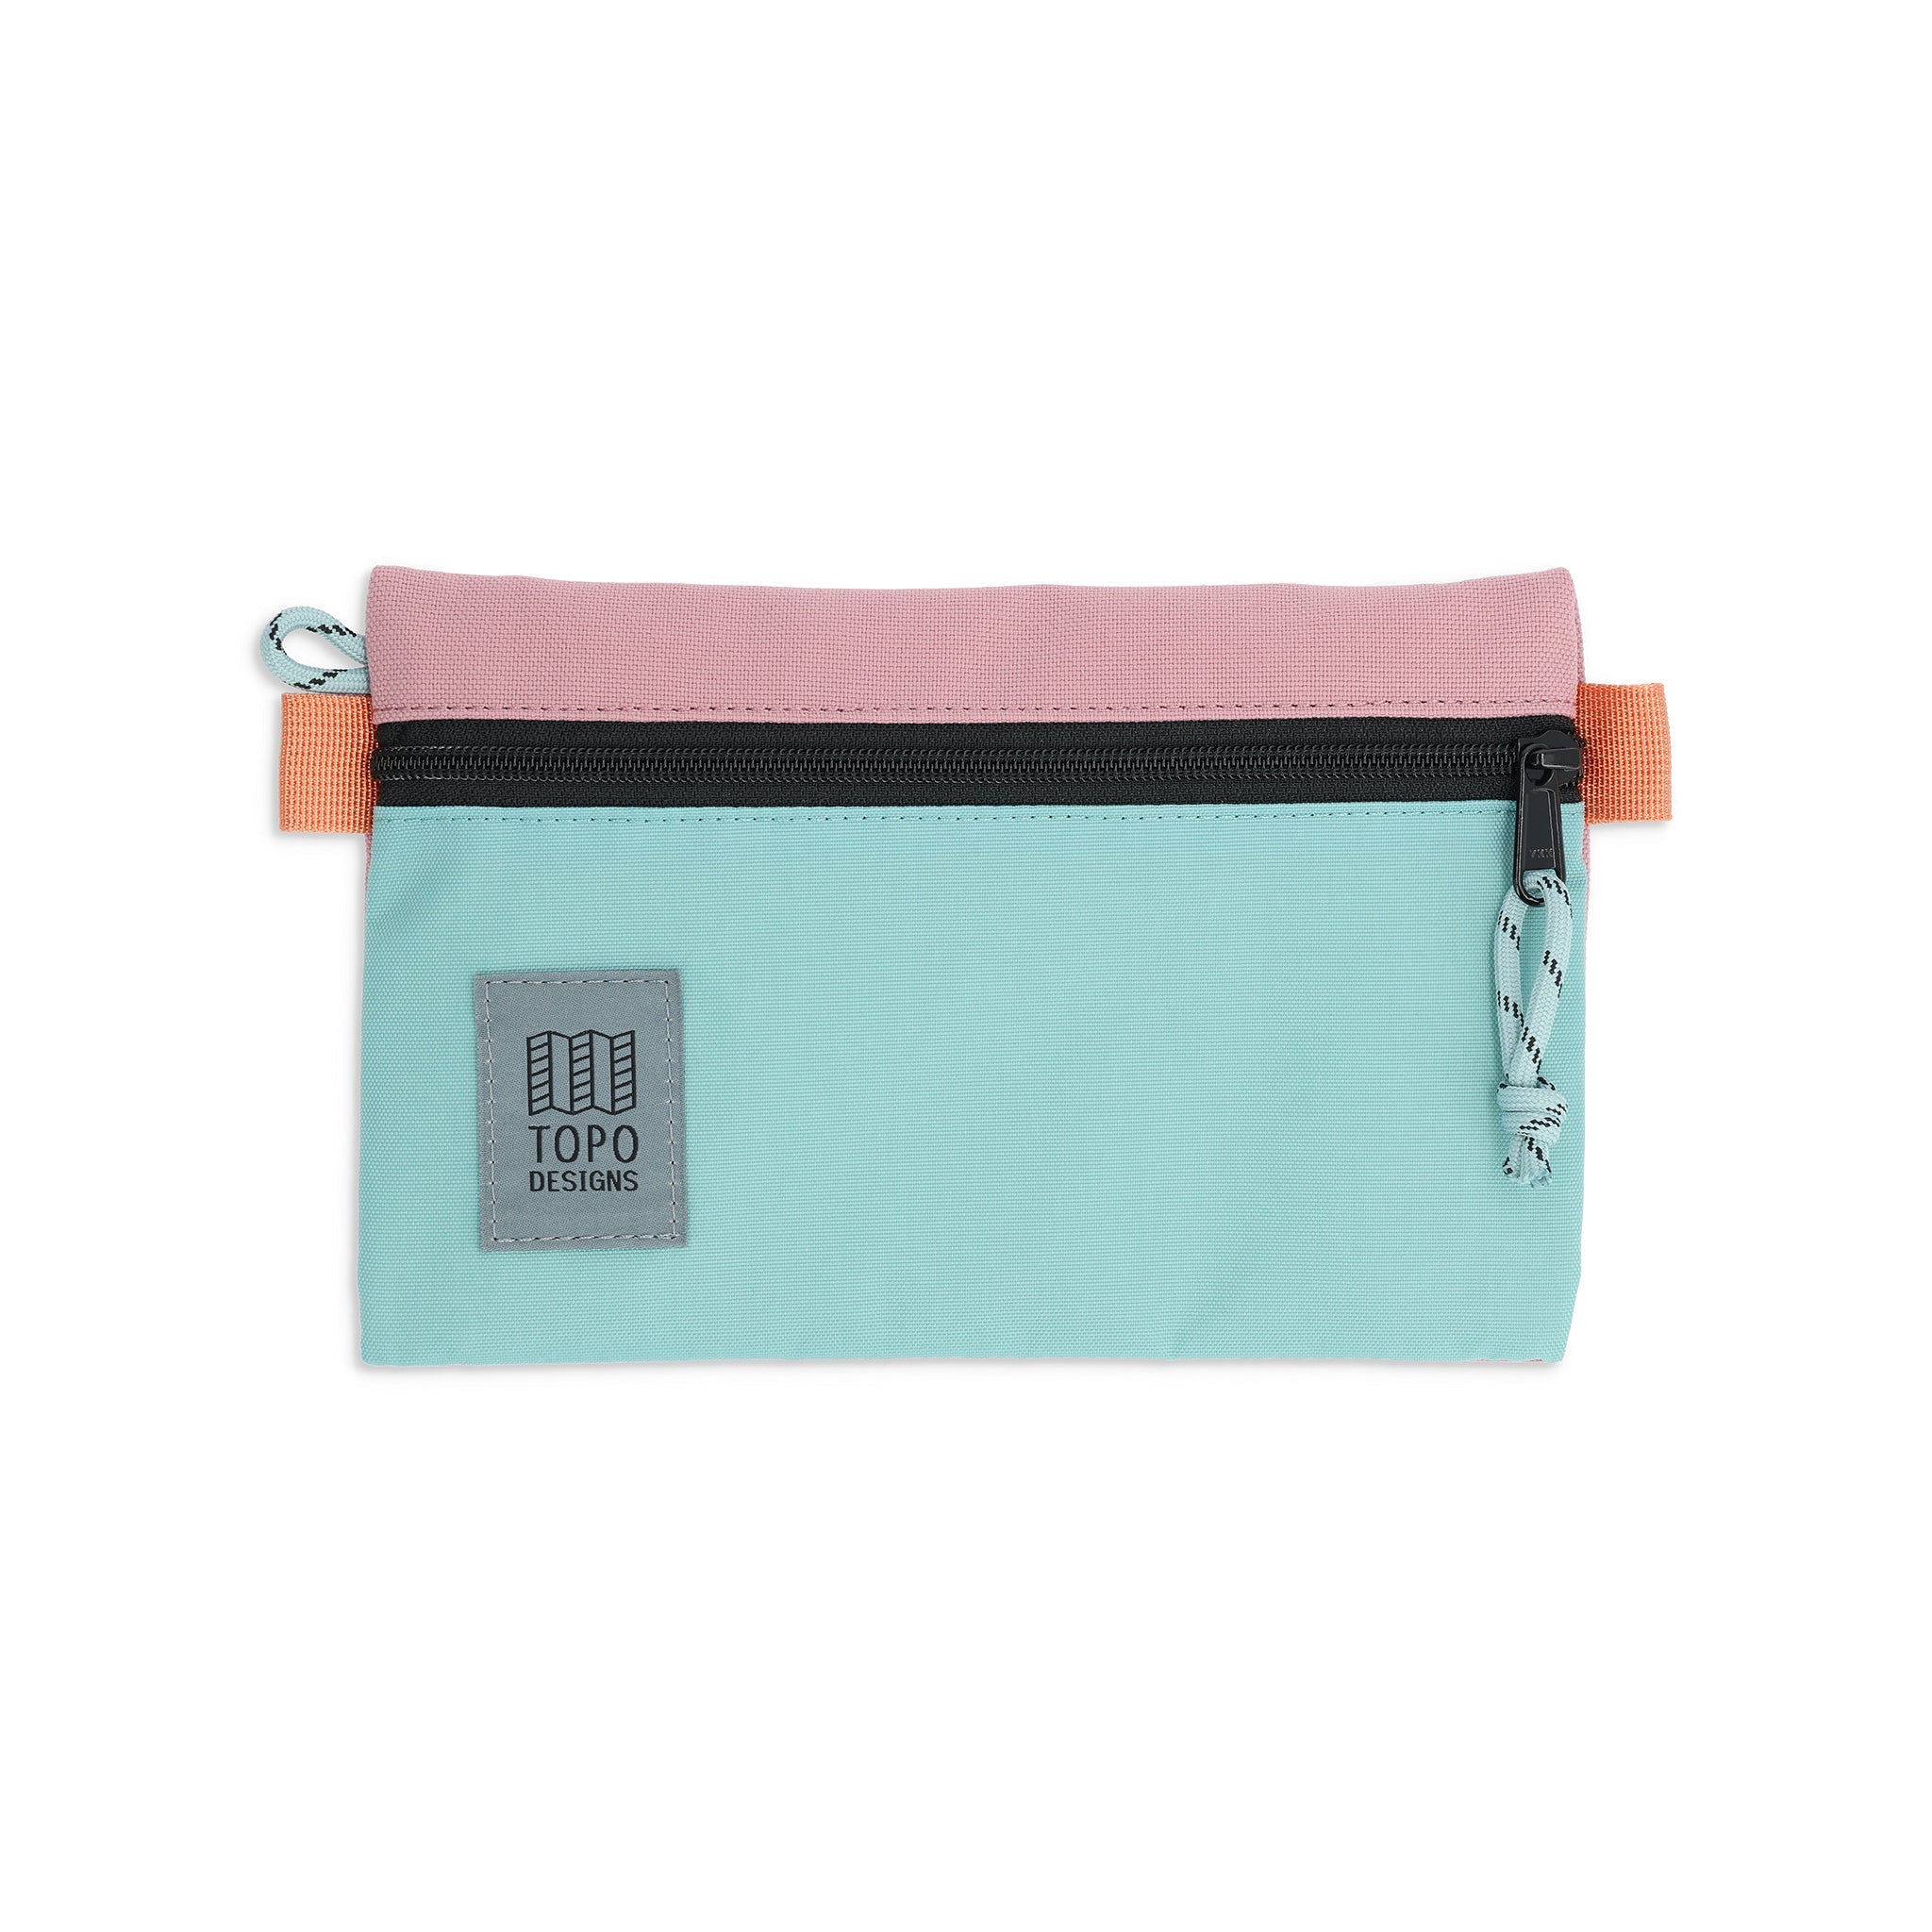 Accessory Bag Small | Topo Designs - Sale